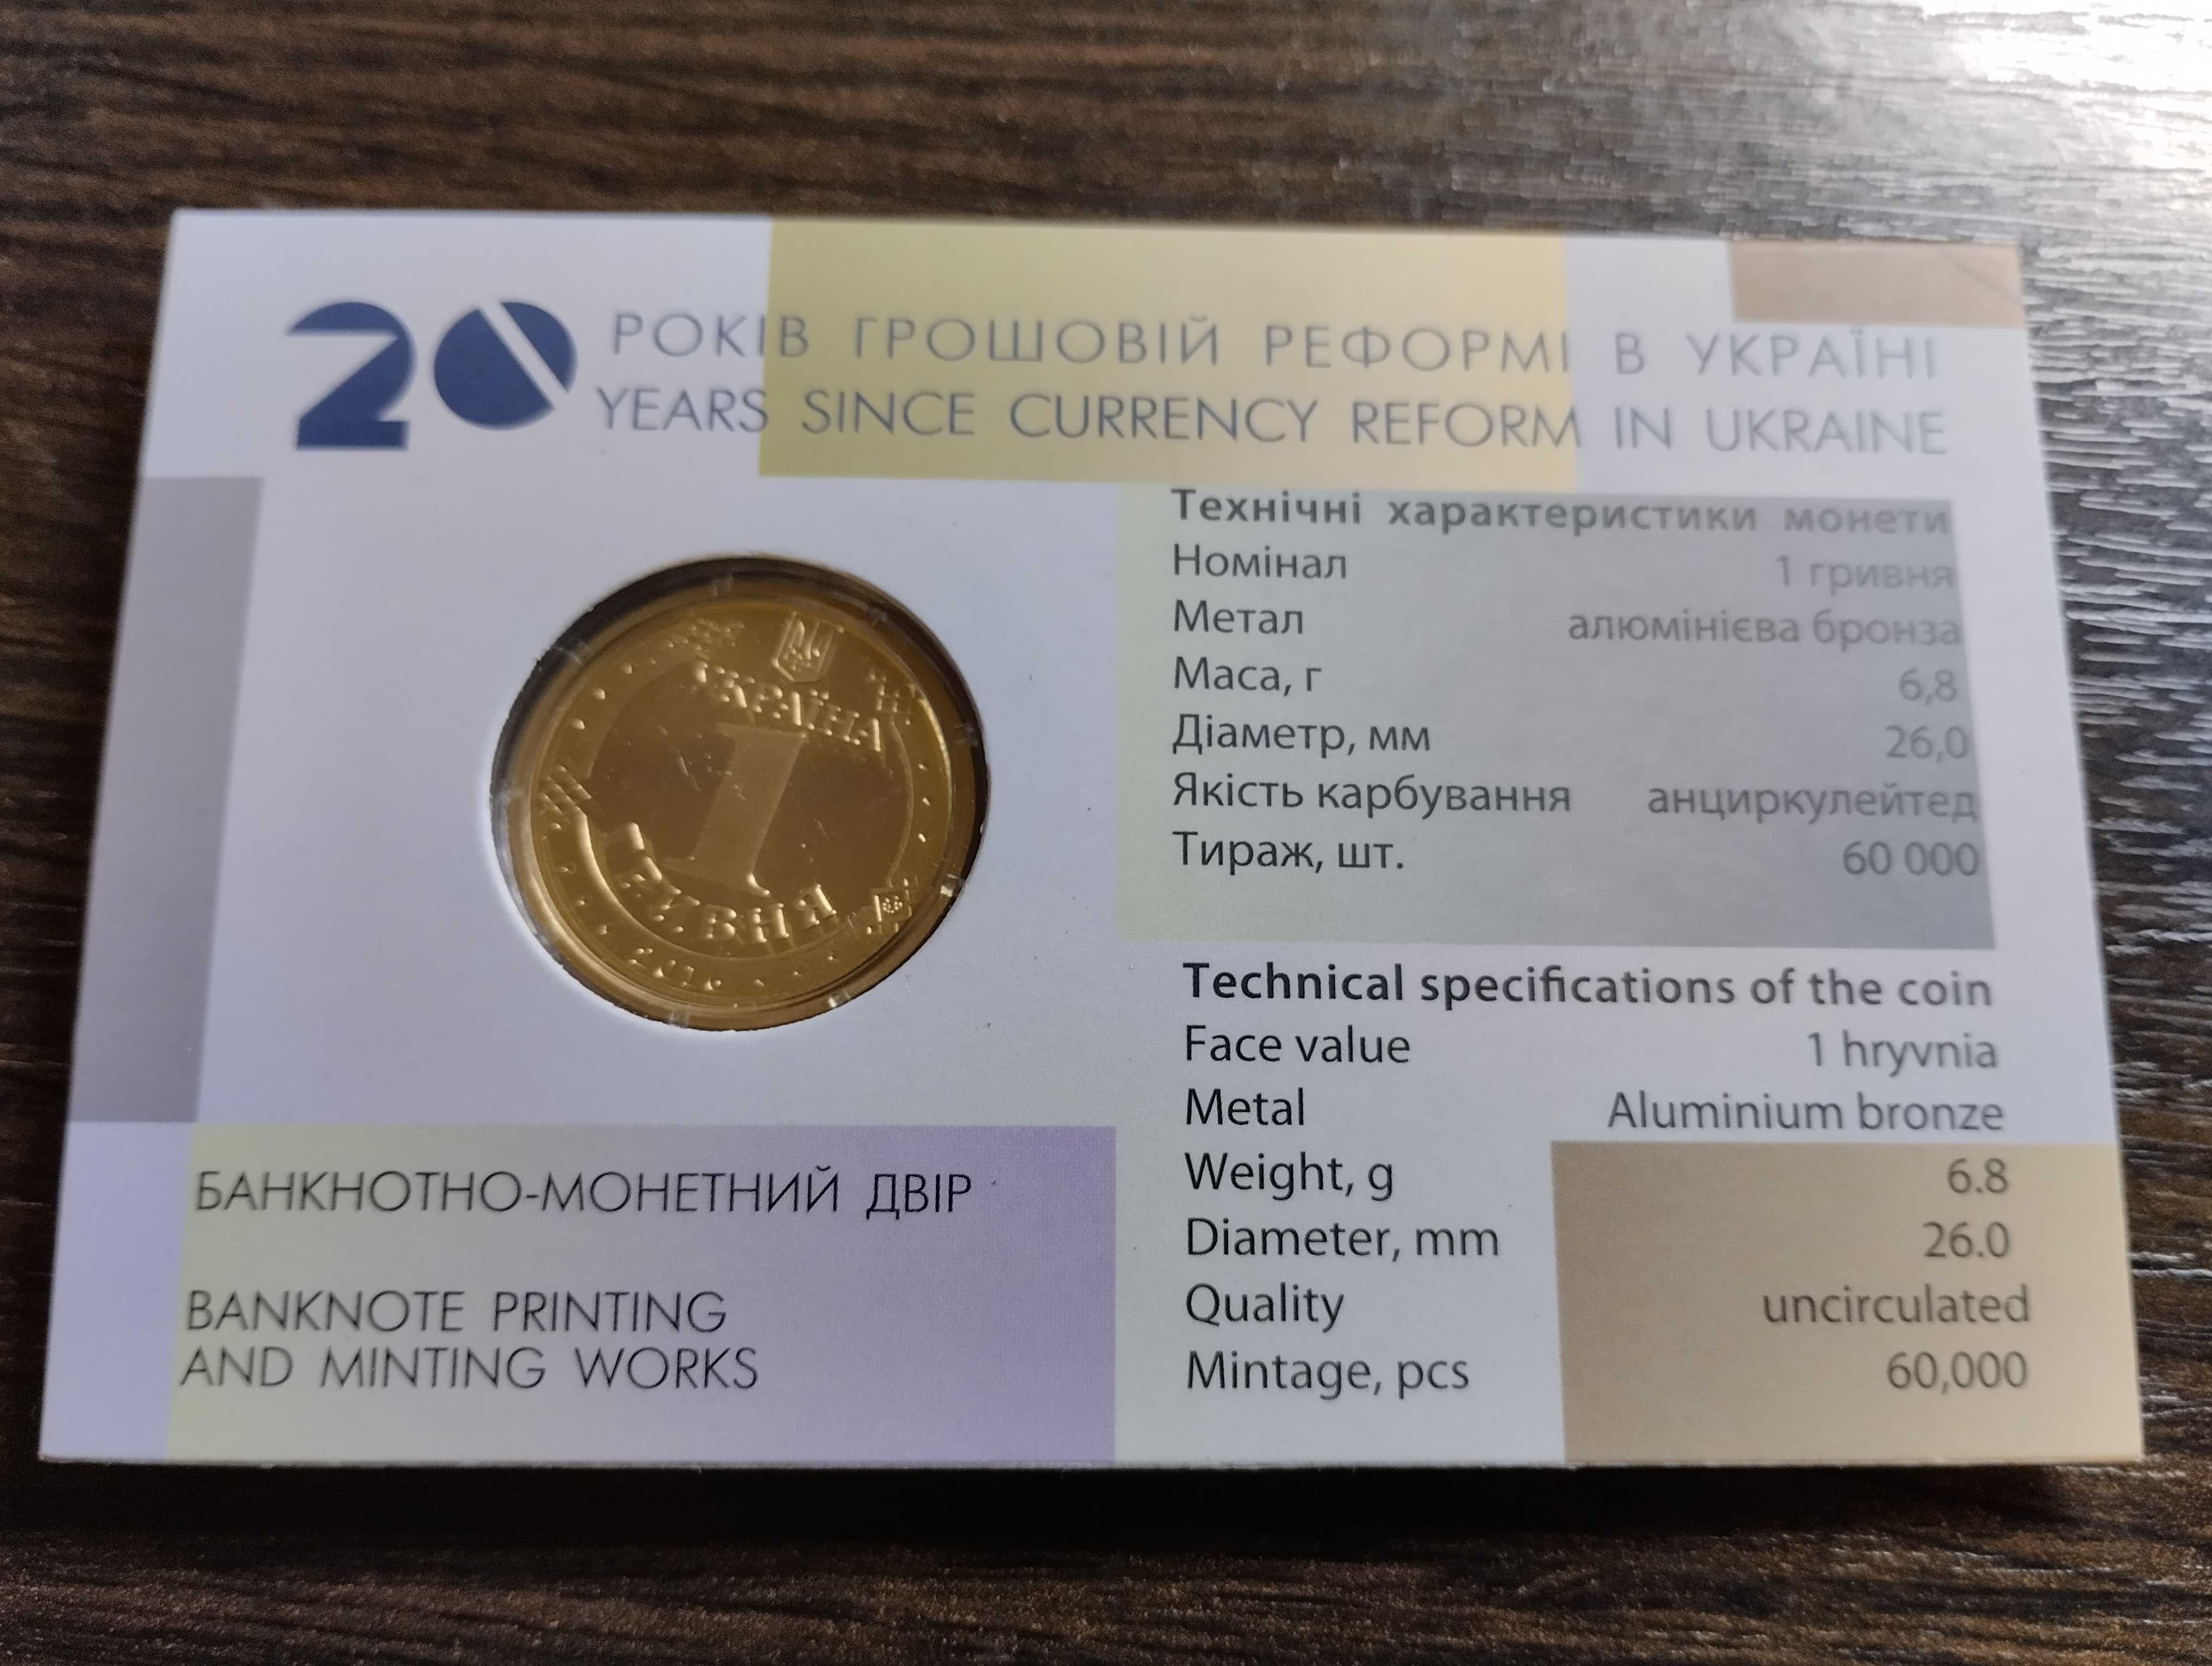 1 гривня 2016 р. "20 років грошовій реформі в Україні"